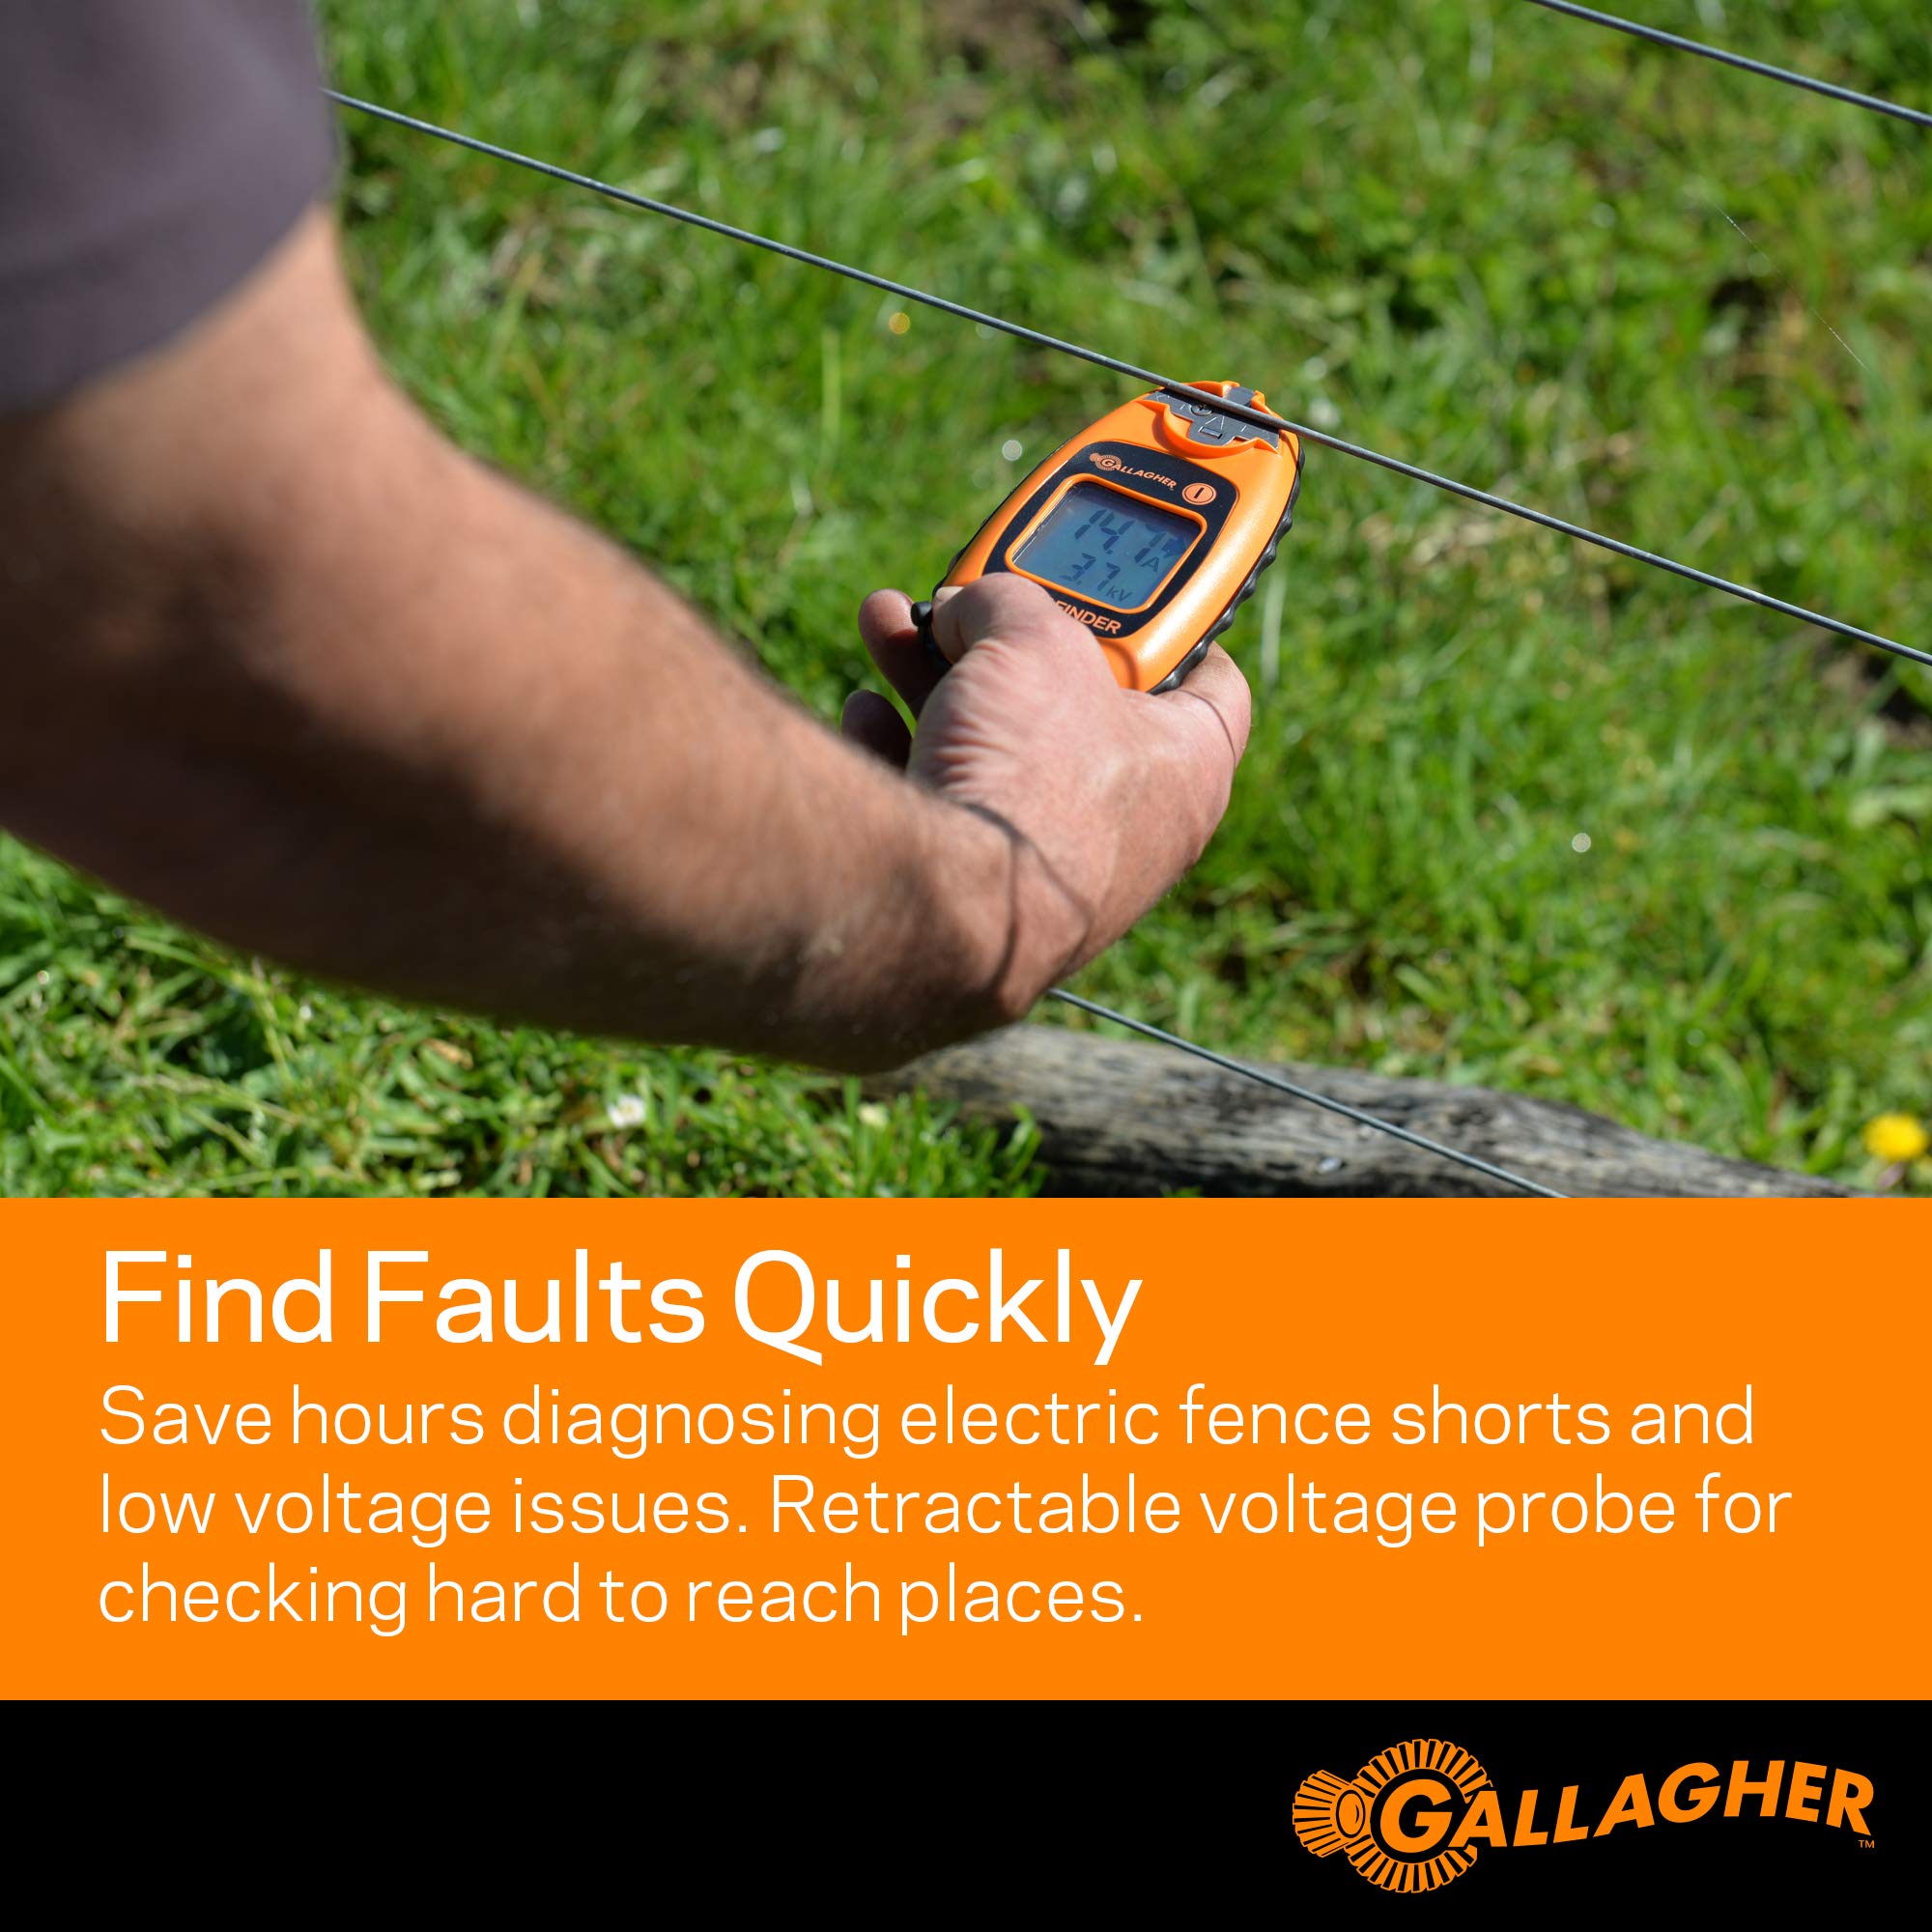 Gallagher 1.5 volt Battery Fence Volt/Current Meter and Fault Finder Orange - image 2 of 6